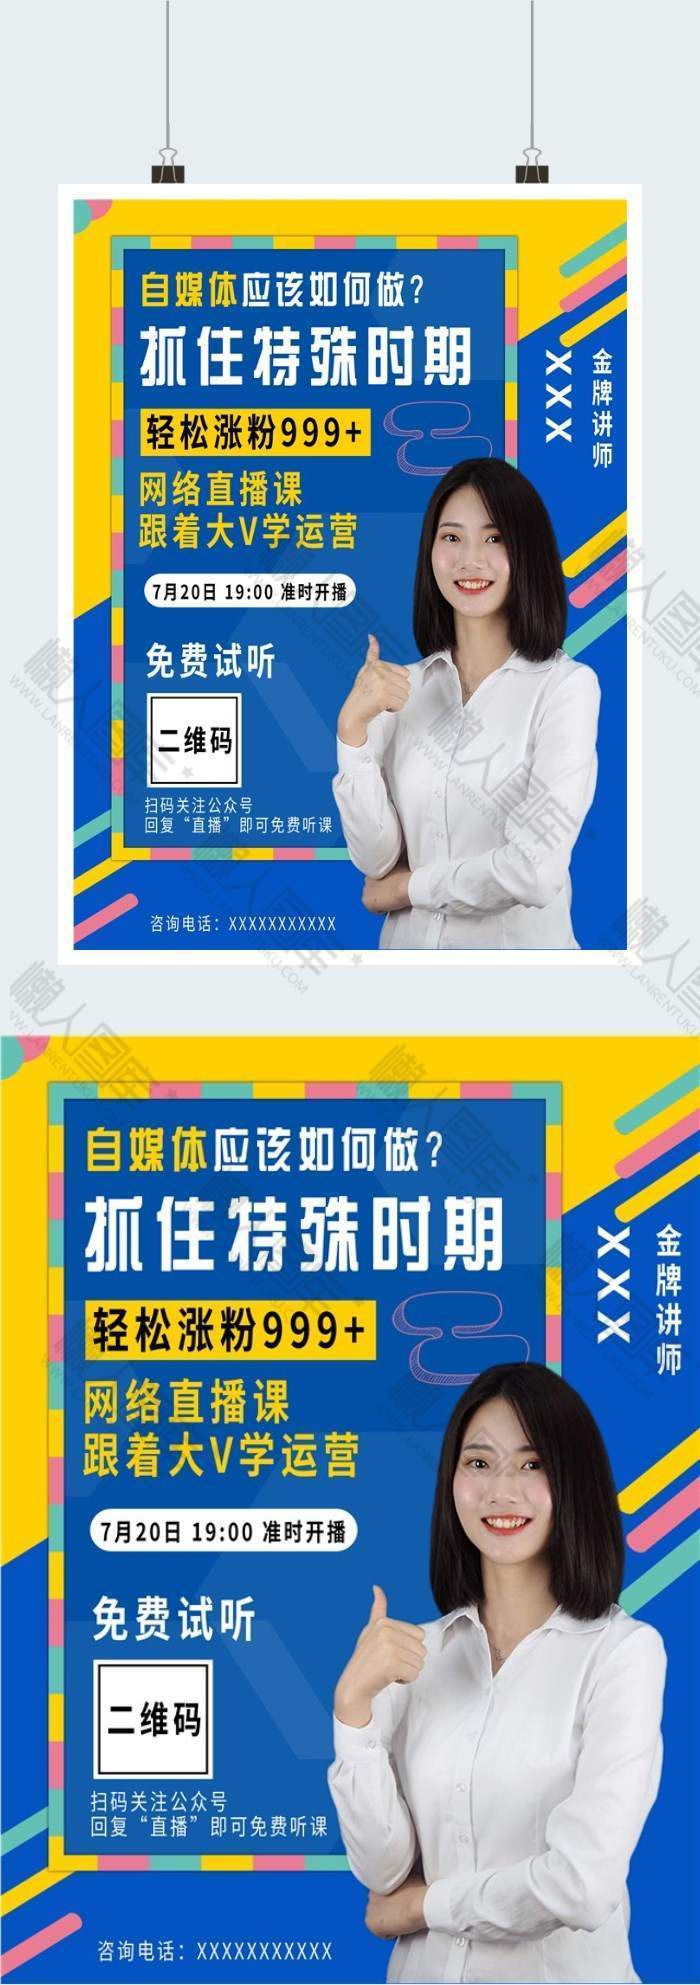 波普风自媒体运营课程培训广告平面海报